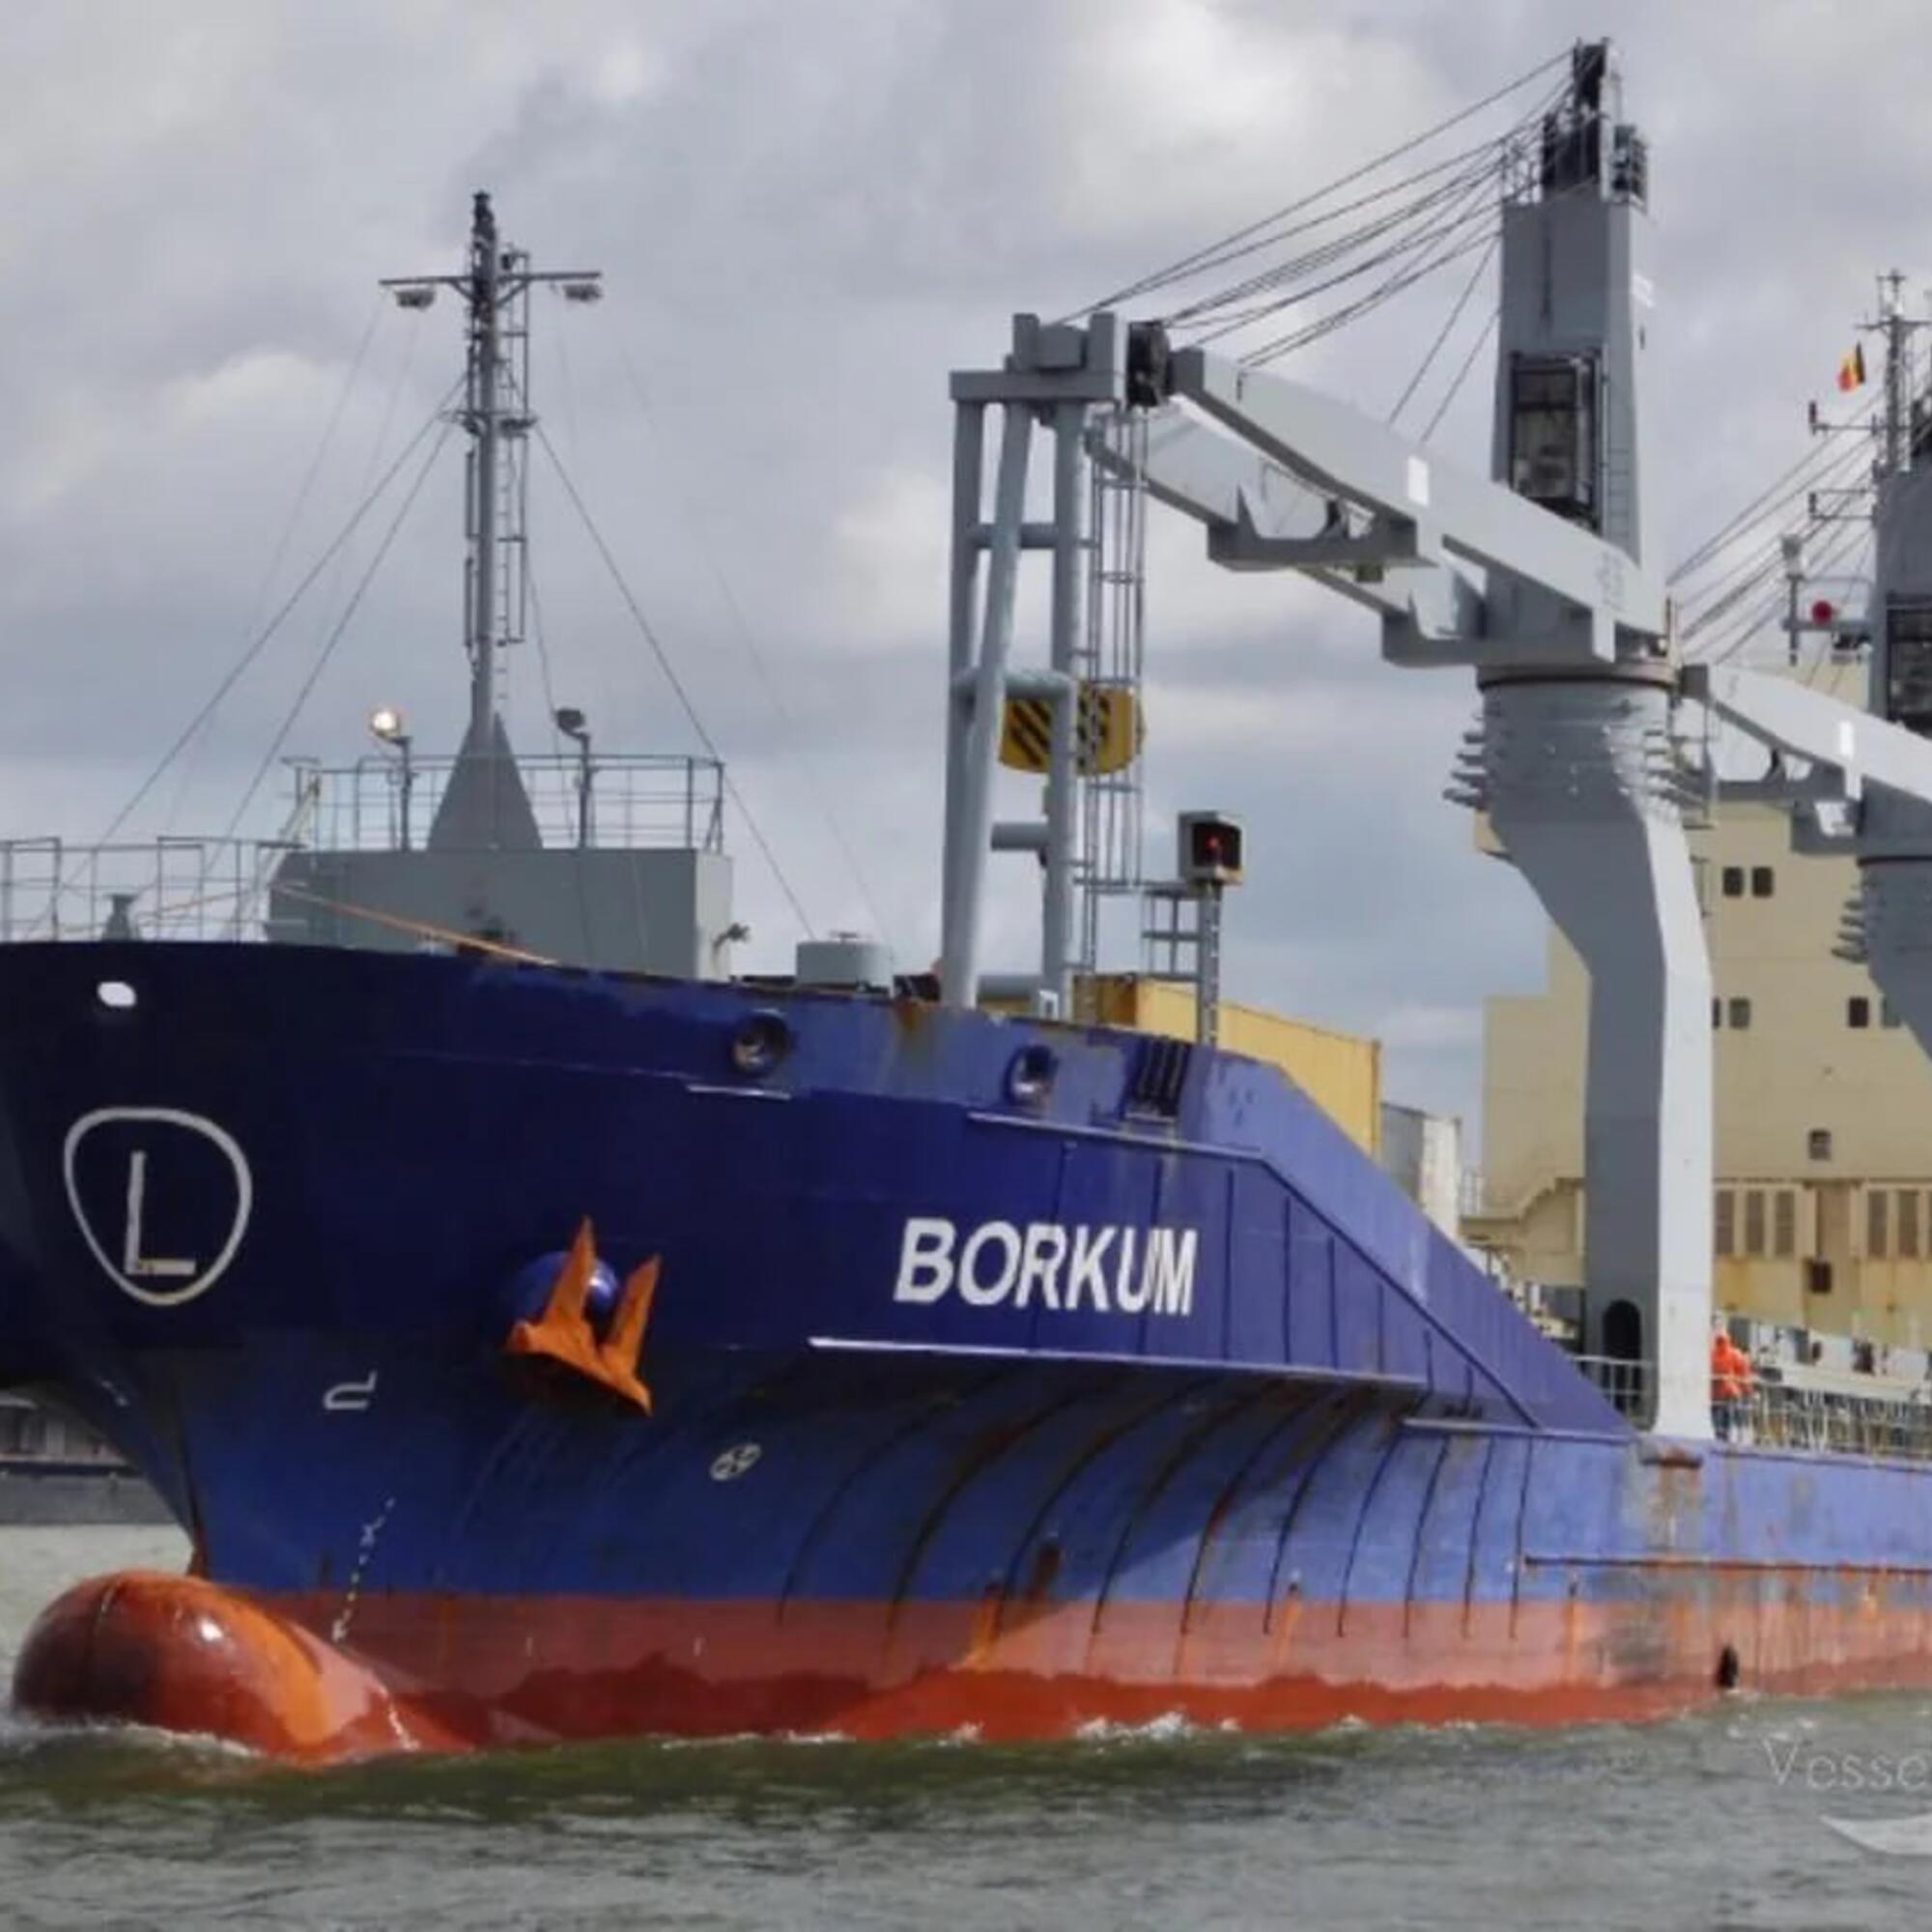 El carguero Borkum ha hecho escala en Cartagena. Según la Rescop, el destino final de su cargamento militar es Israel, después de pasar poner varias escalas.